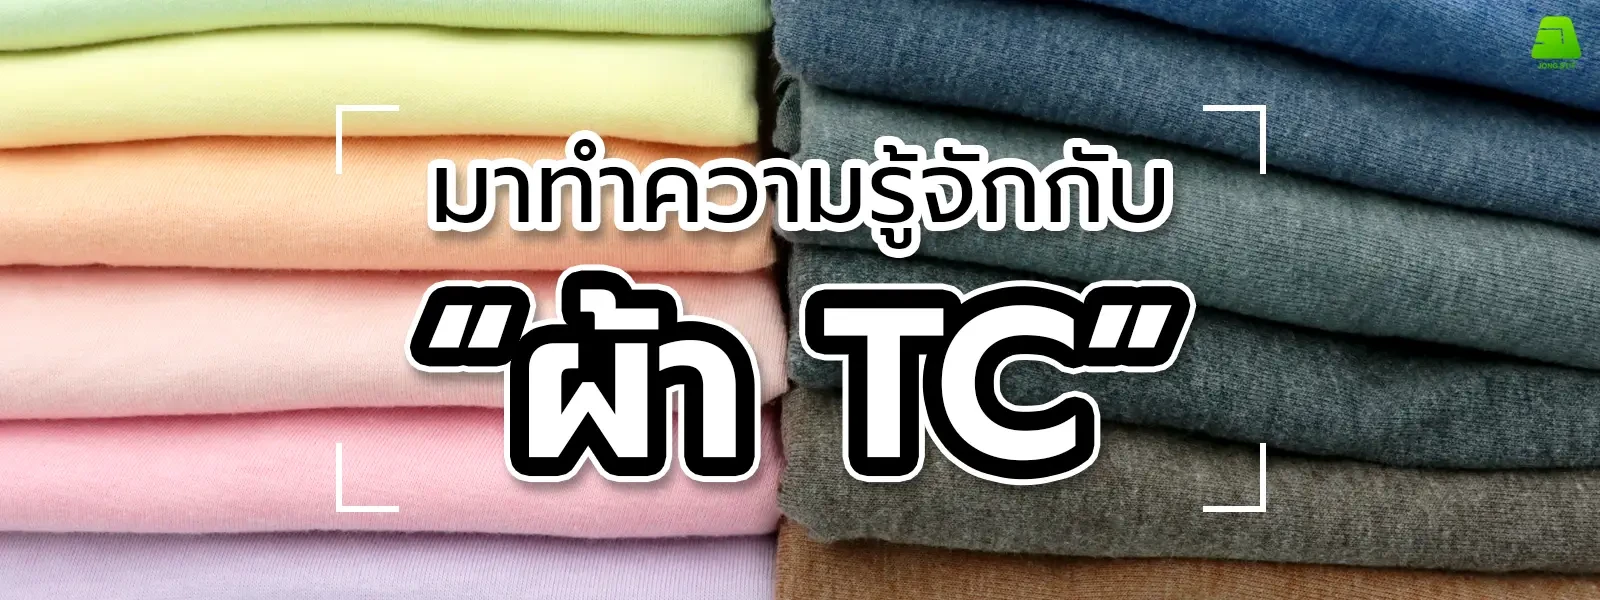 ผ้า TC แตกต่างจากผ้าชนิดอื่นยังไง? แล้วเอาไปใช้ทำอะไรได้บ้าง?